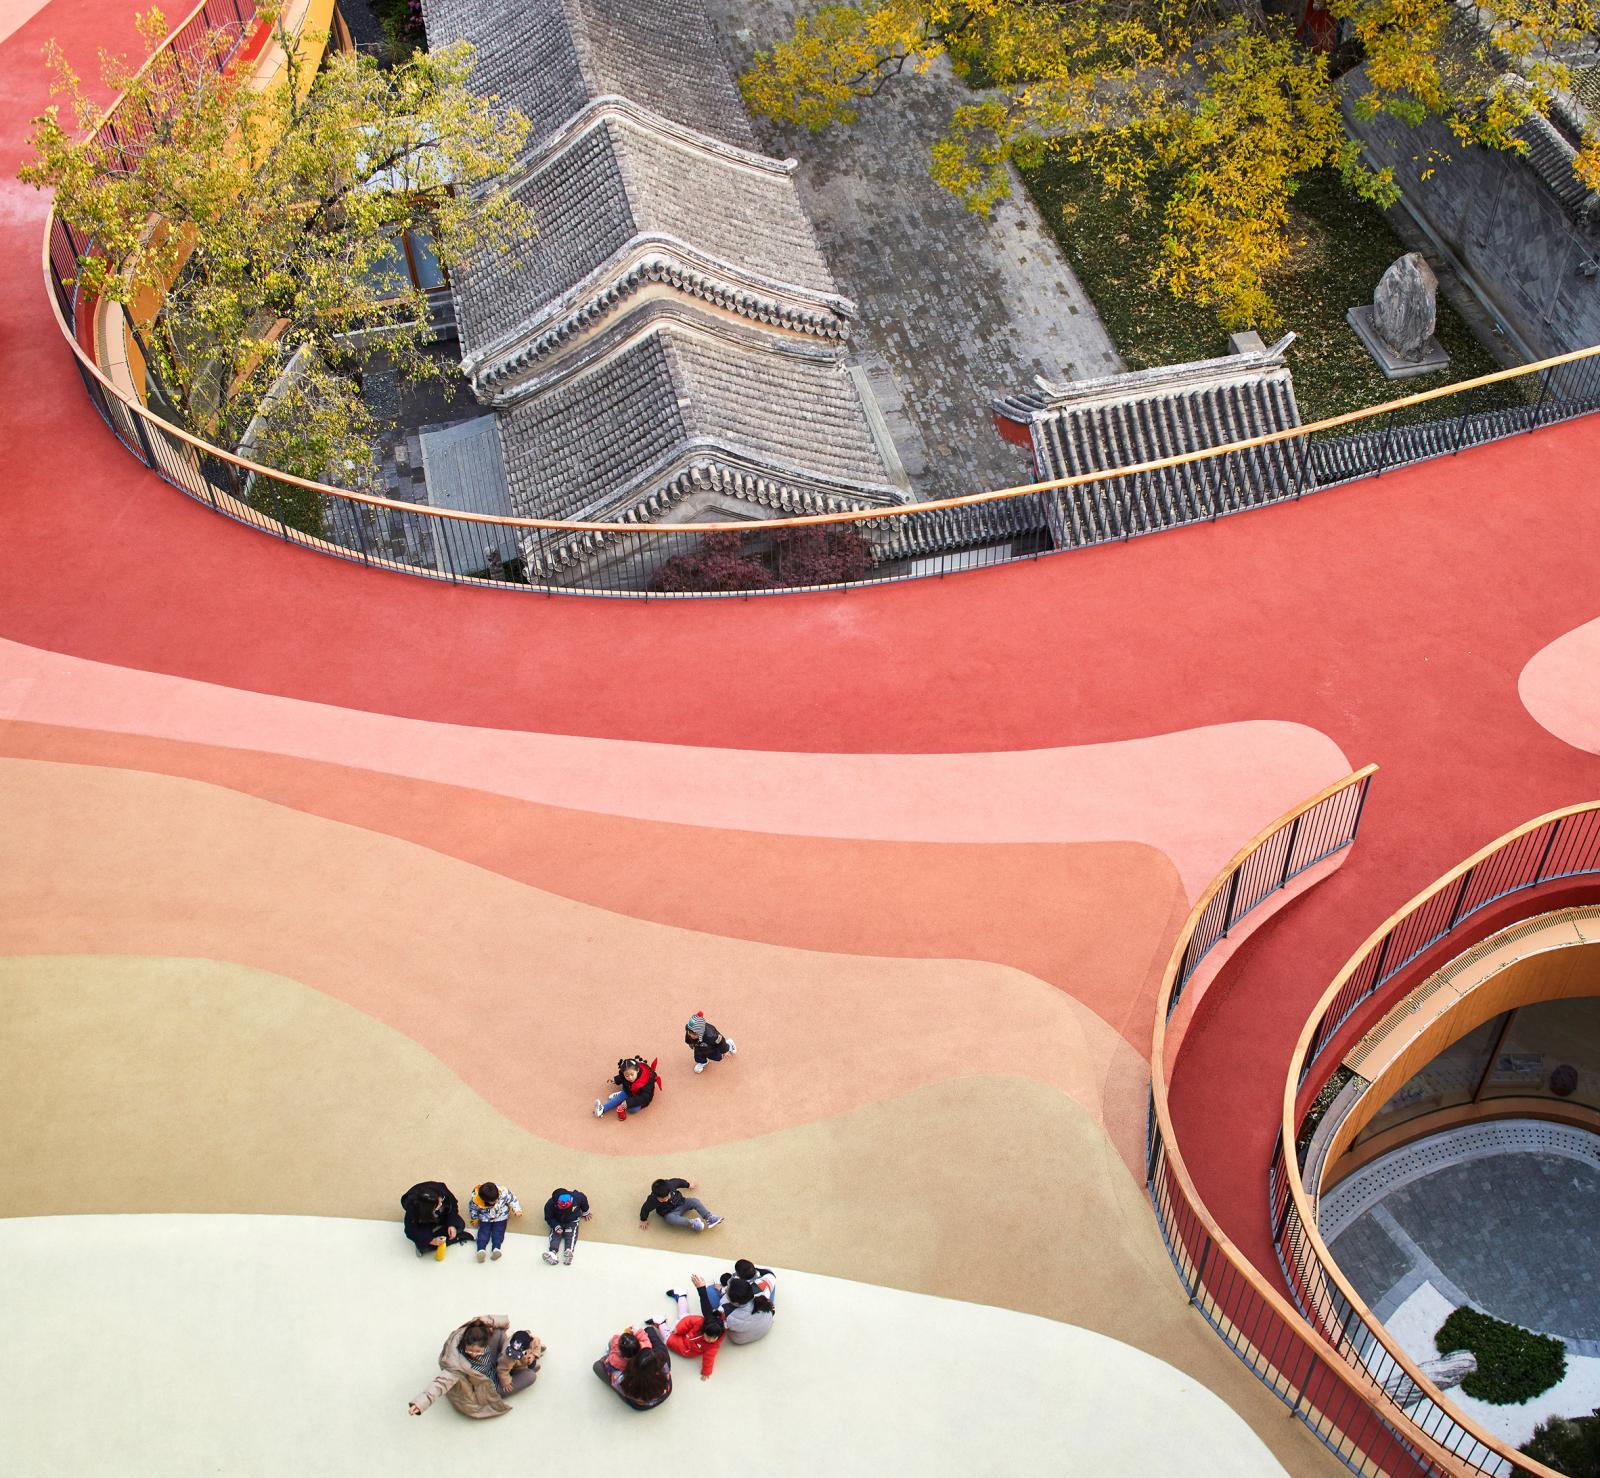 Trường mẫu giáo gây ấn tượng với phần mái màu đỏ và cam tươi bao phủ, tương phản với mái ngói màu xám cổ kính của các công trình lân cận.